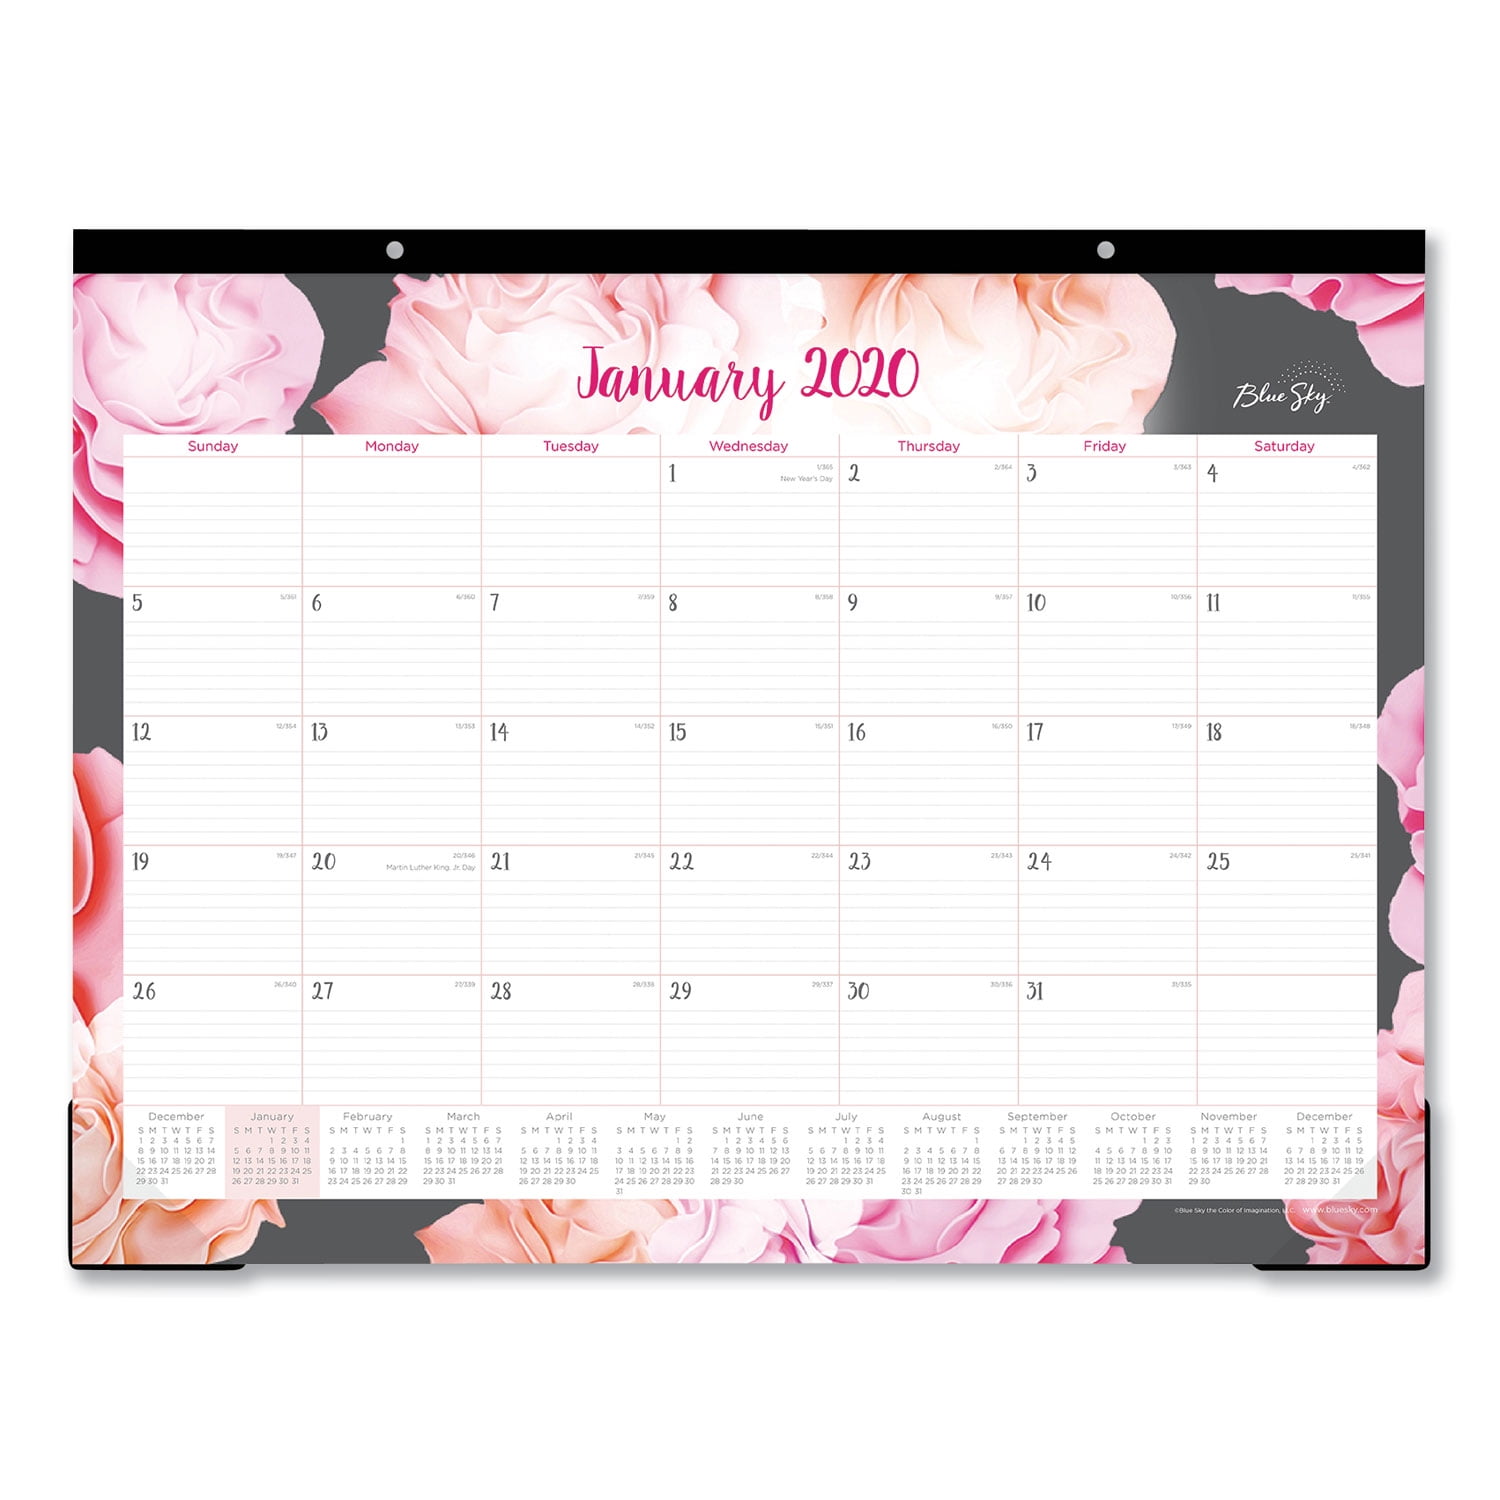 Blue Sky 2020 Monthly Desk Pad Calendar 